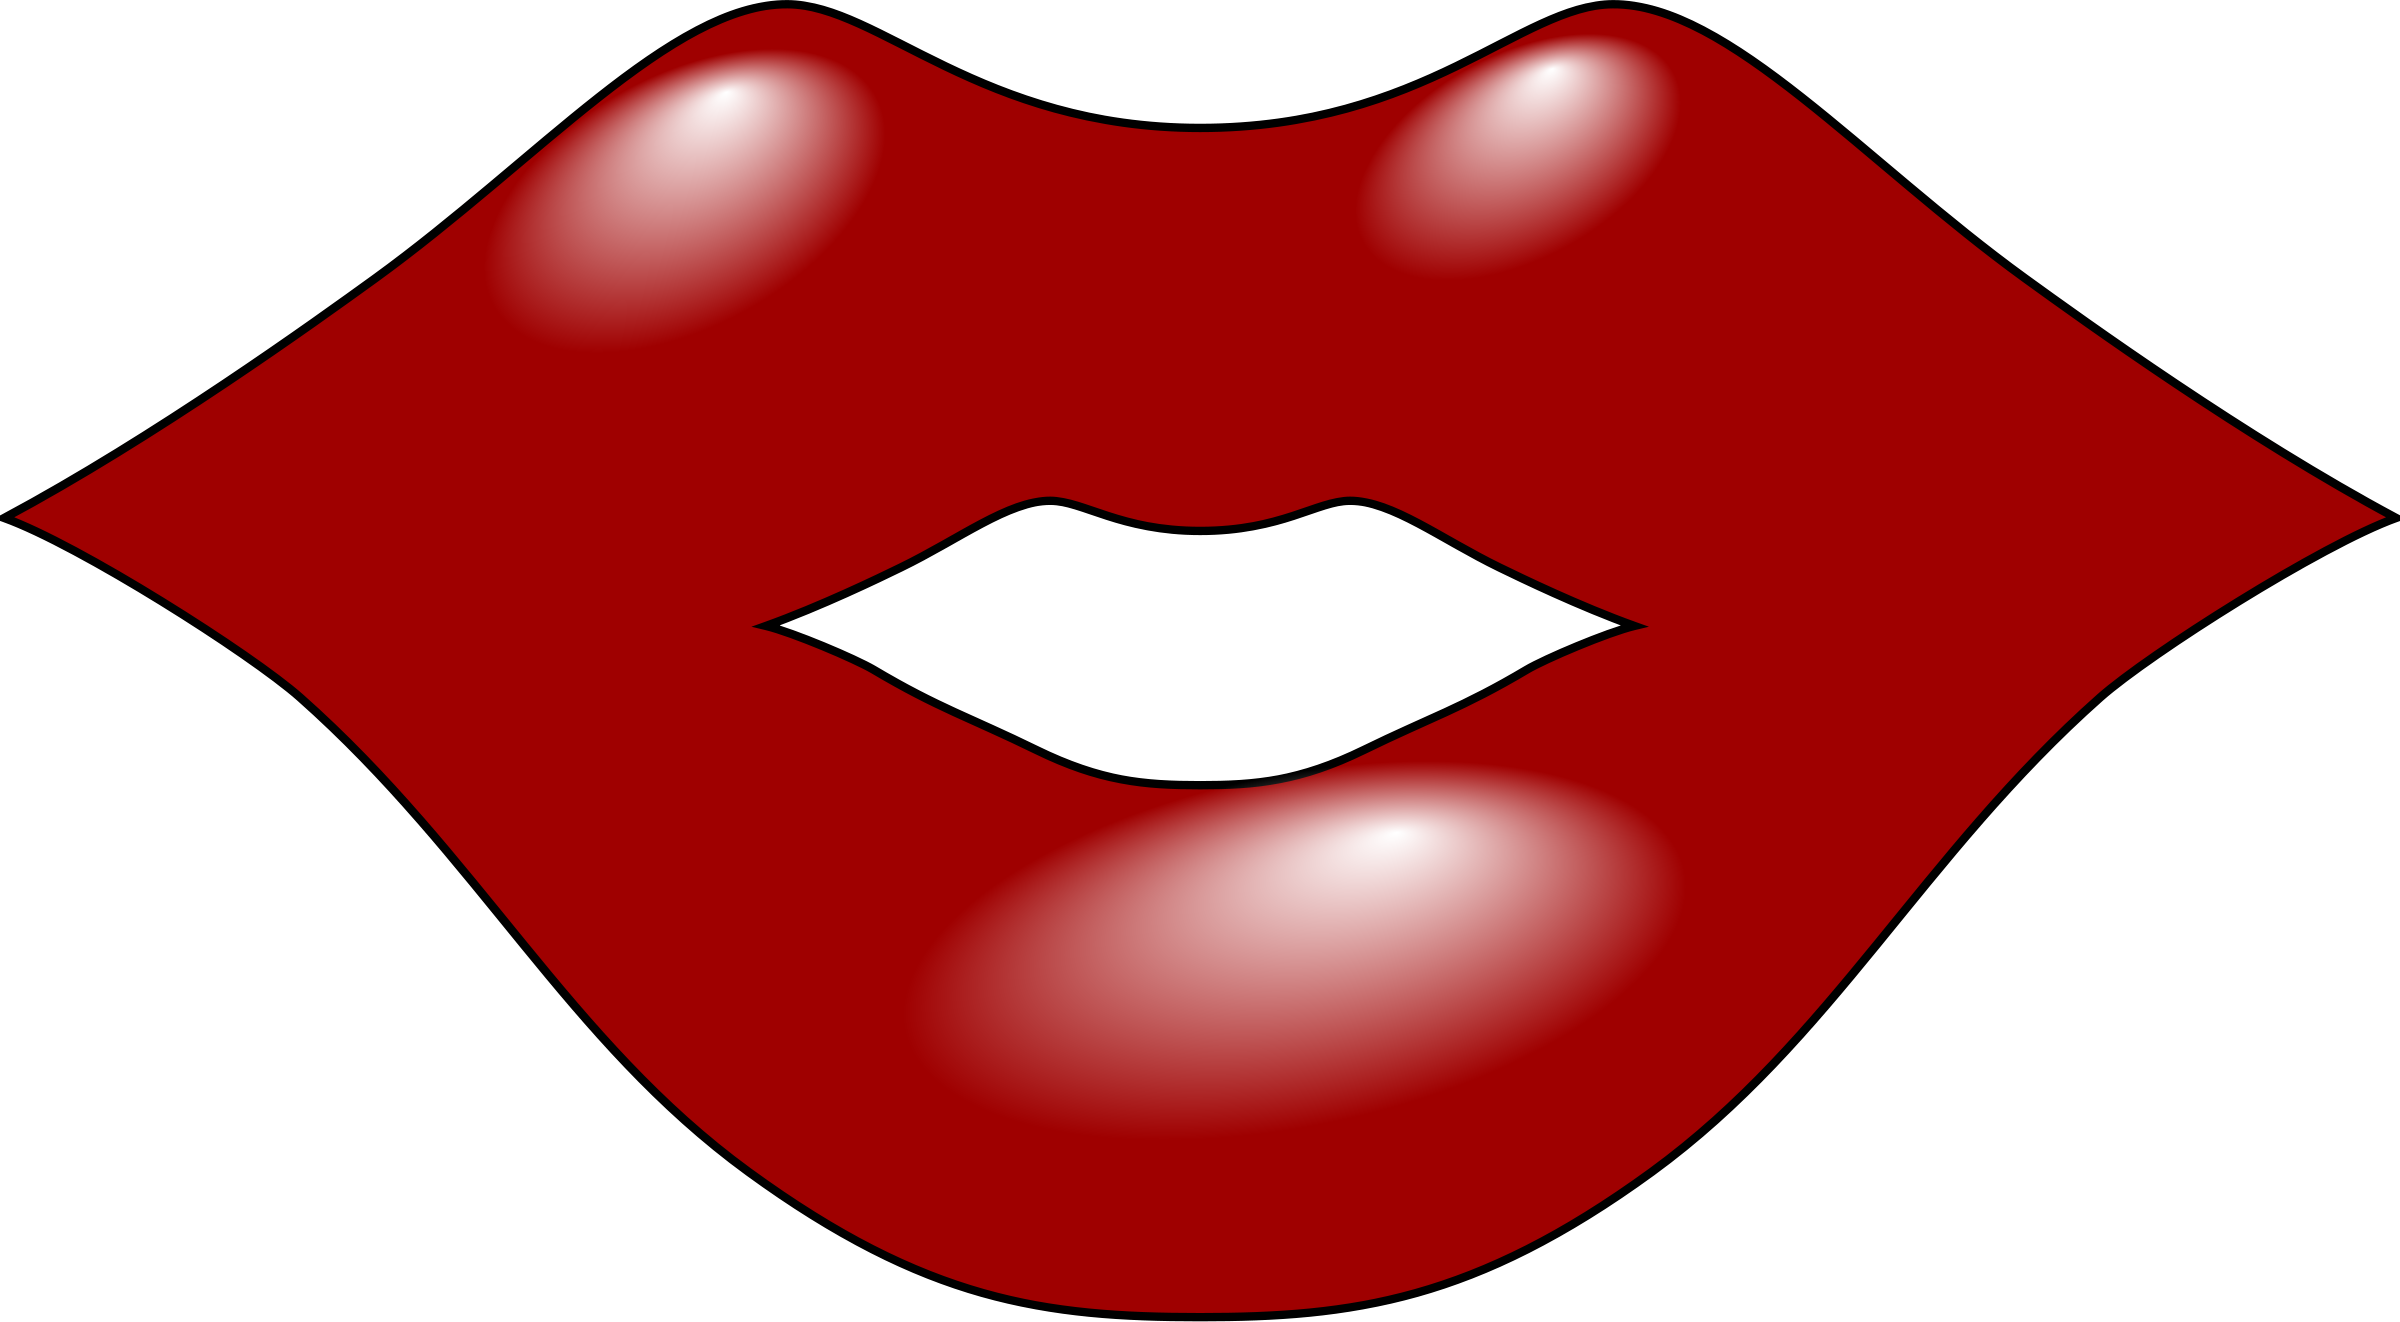 Red feminine lips